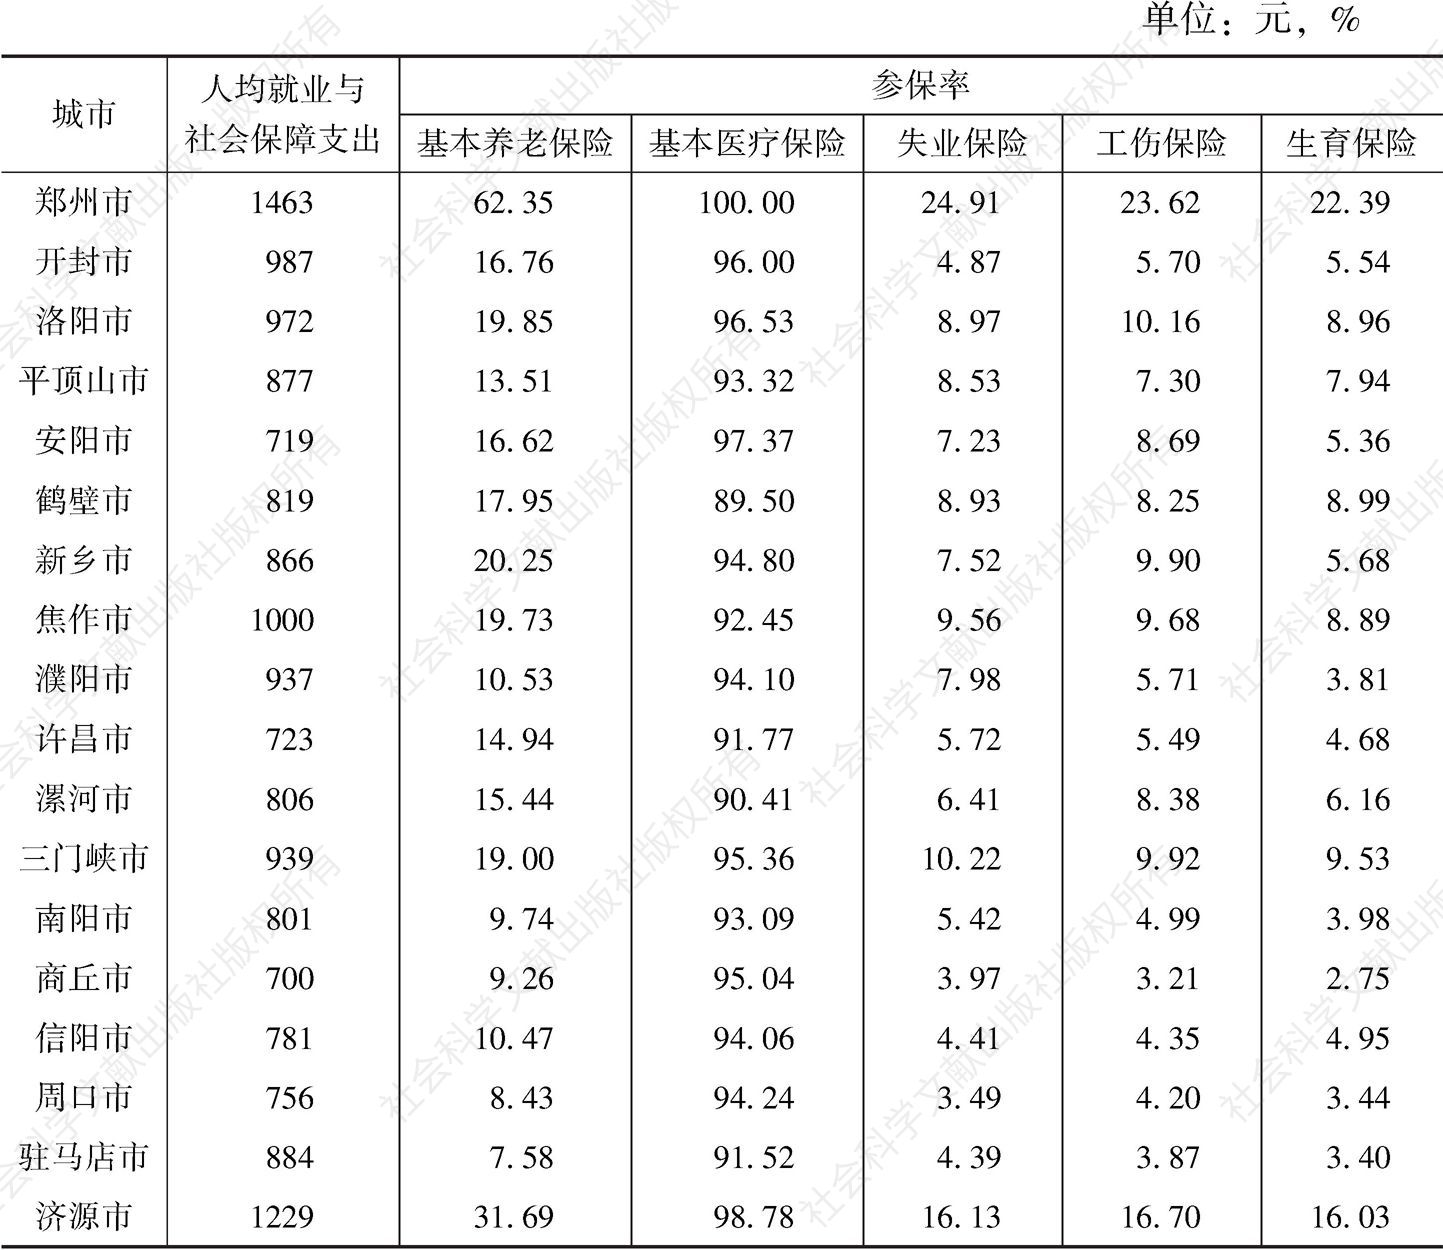 表9 河南省各地市人均就业与社会保障支出和参保率汇总